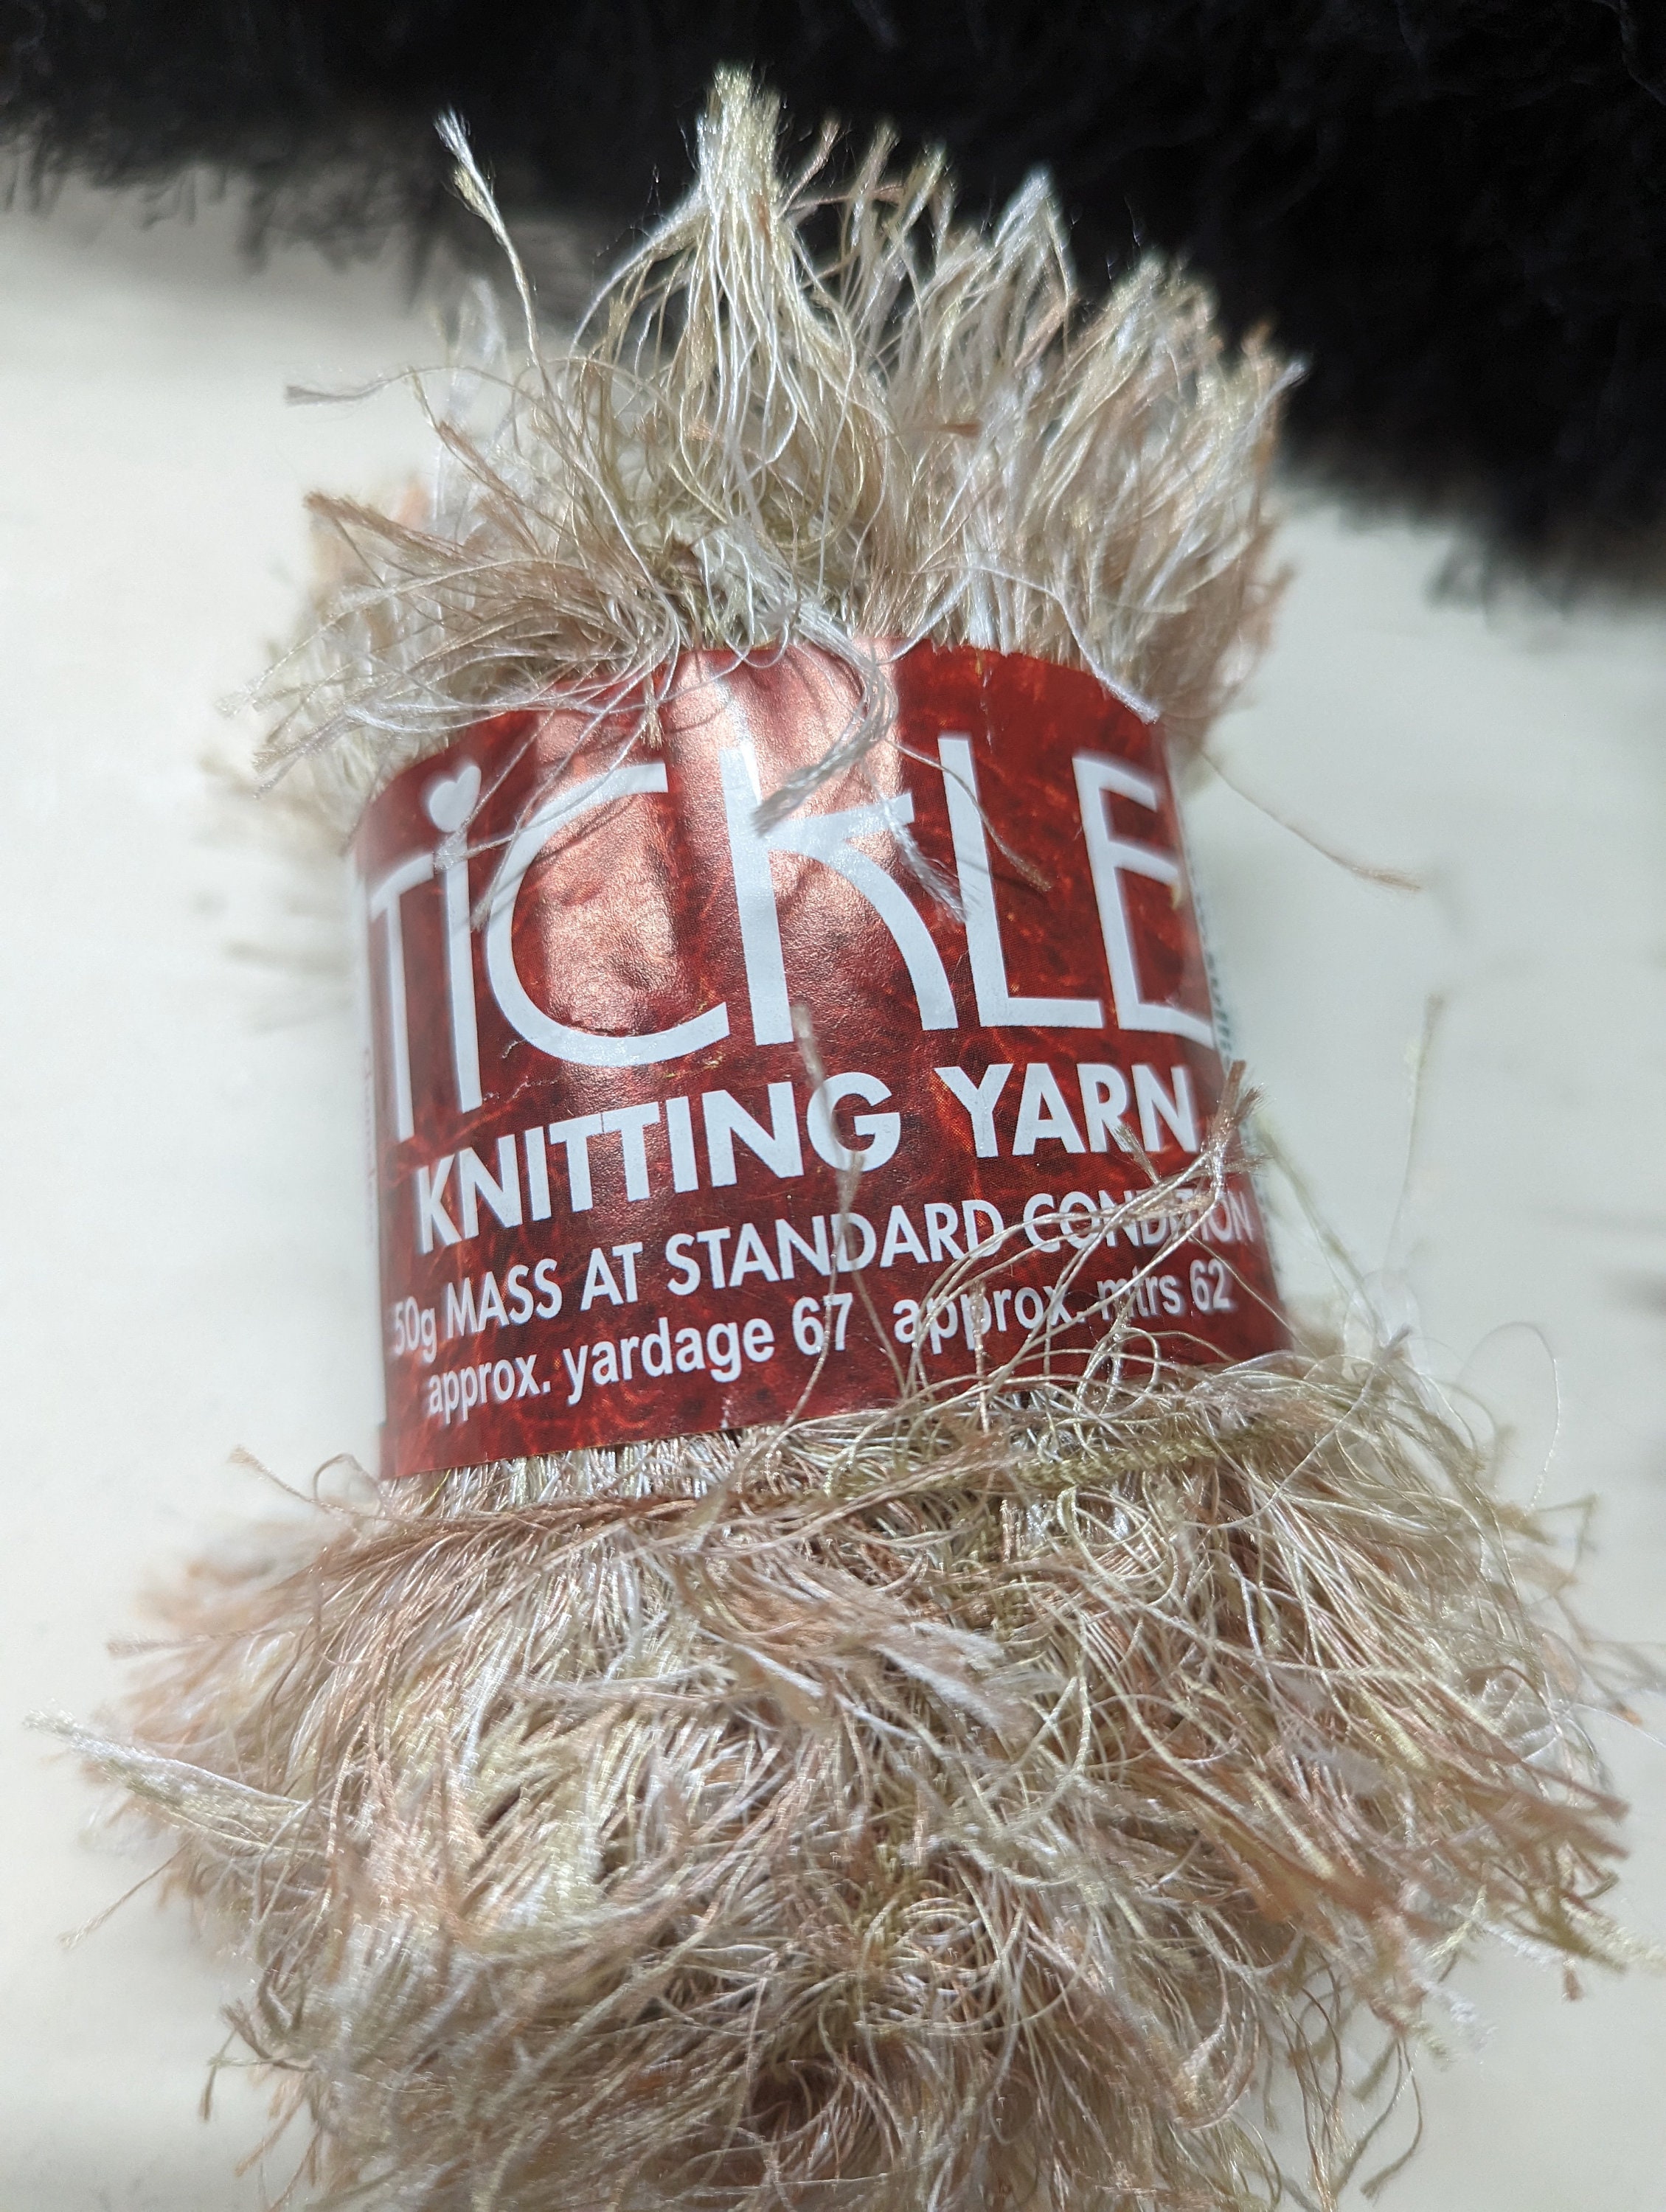 Tickle Knitting Yarn - Eyelash yarn on sale now - MyNotions